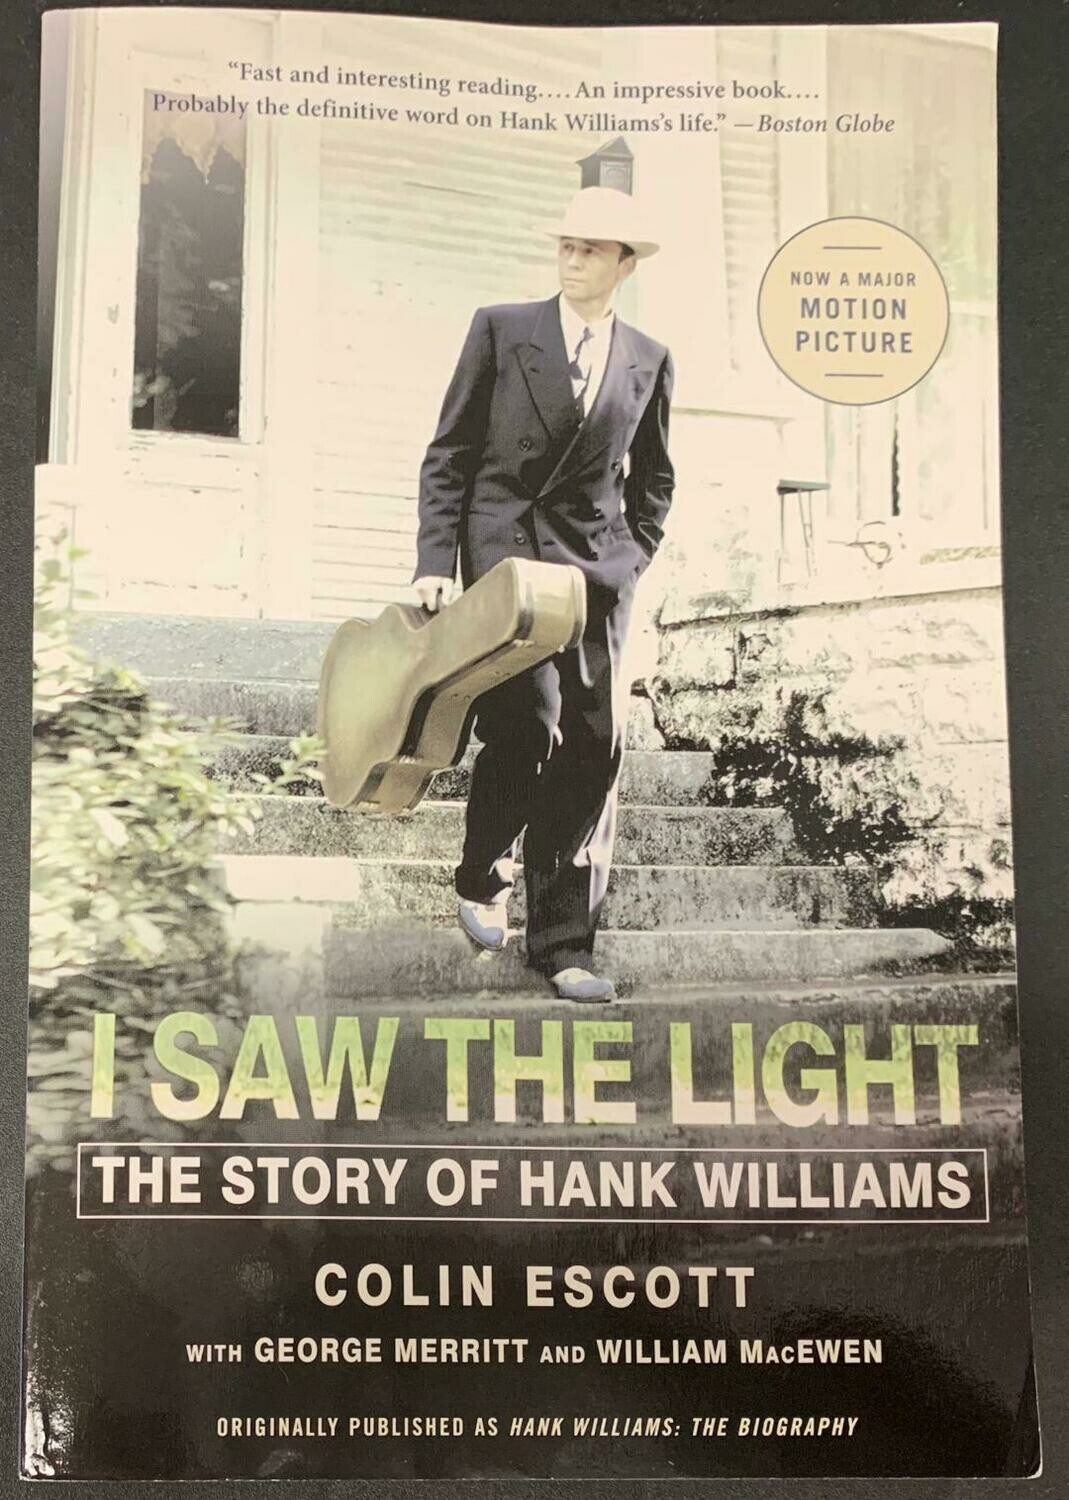 Book - "I Saw the Light"